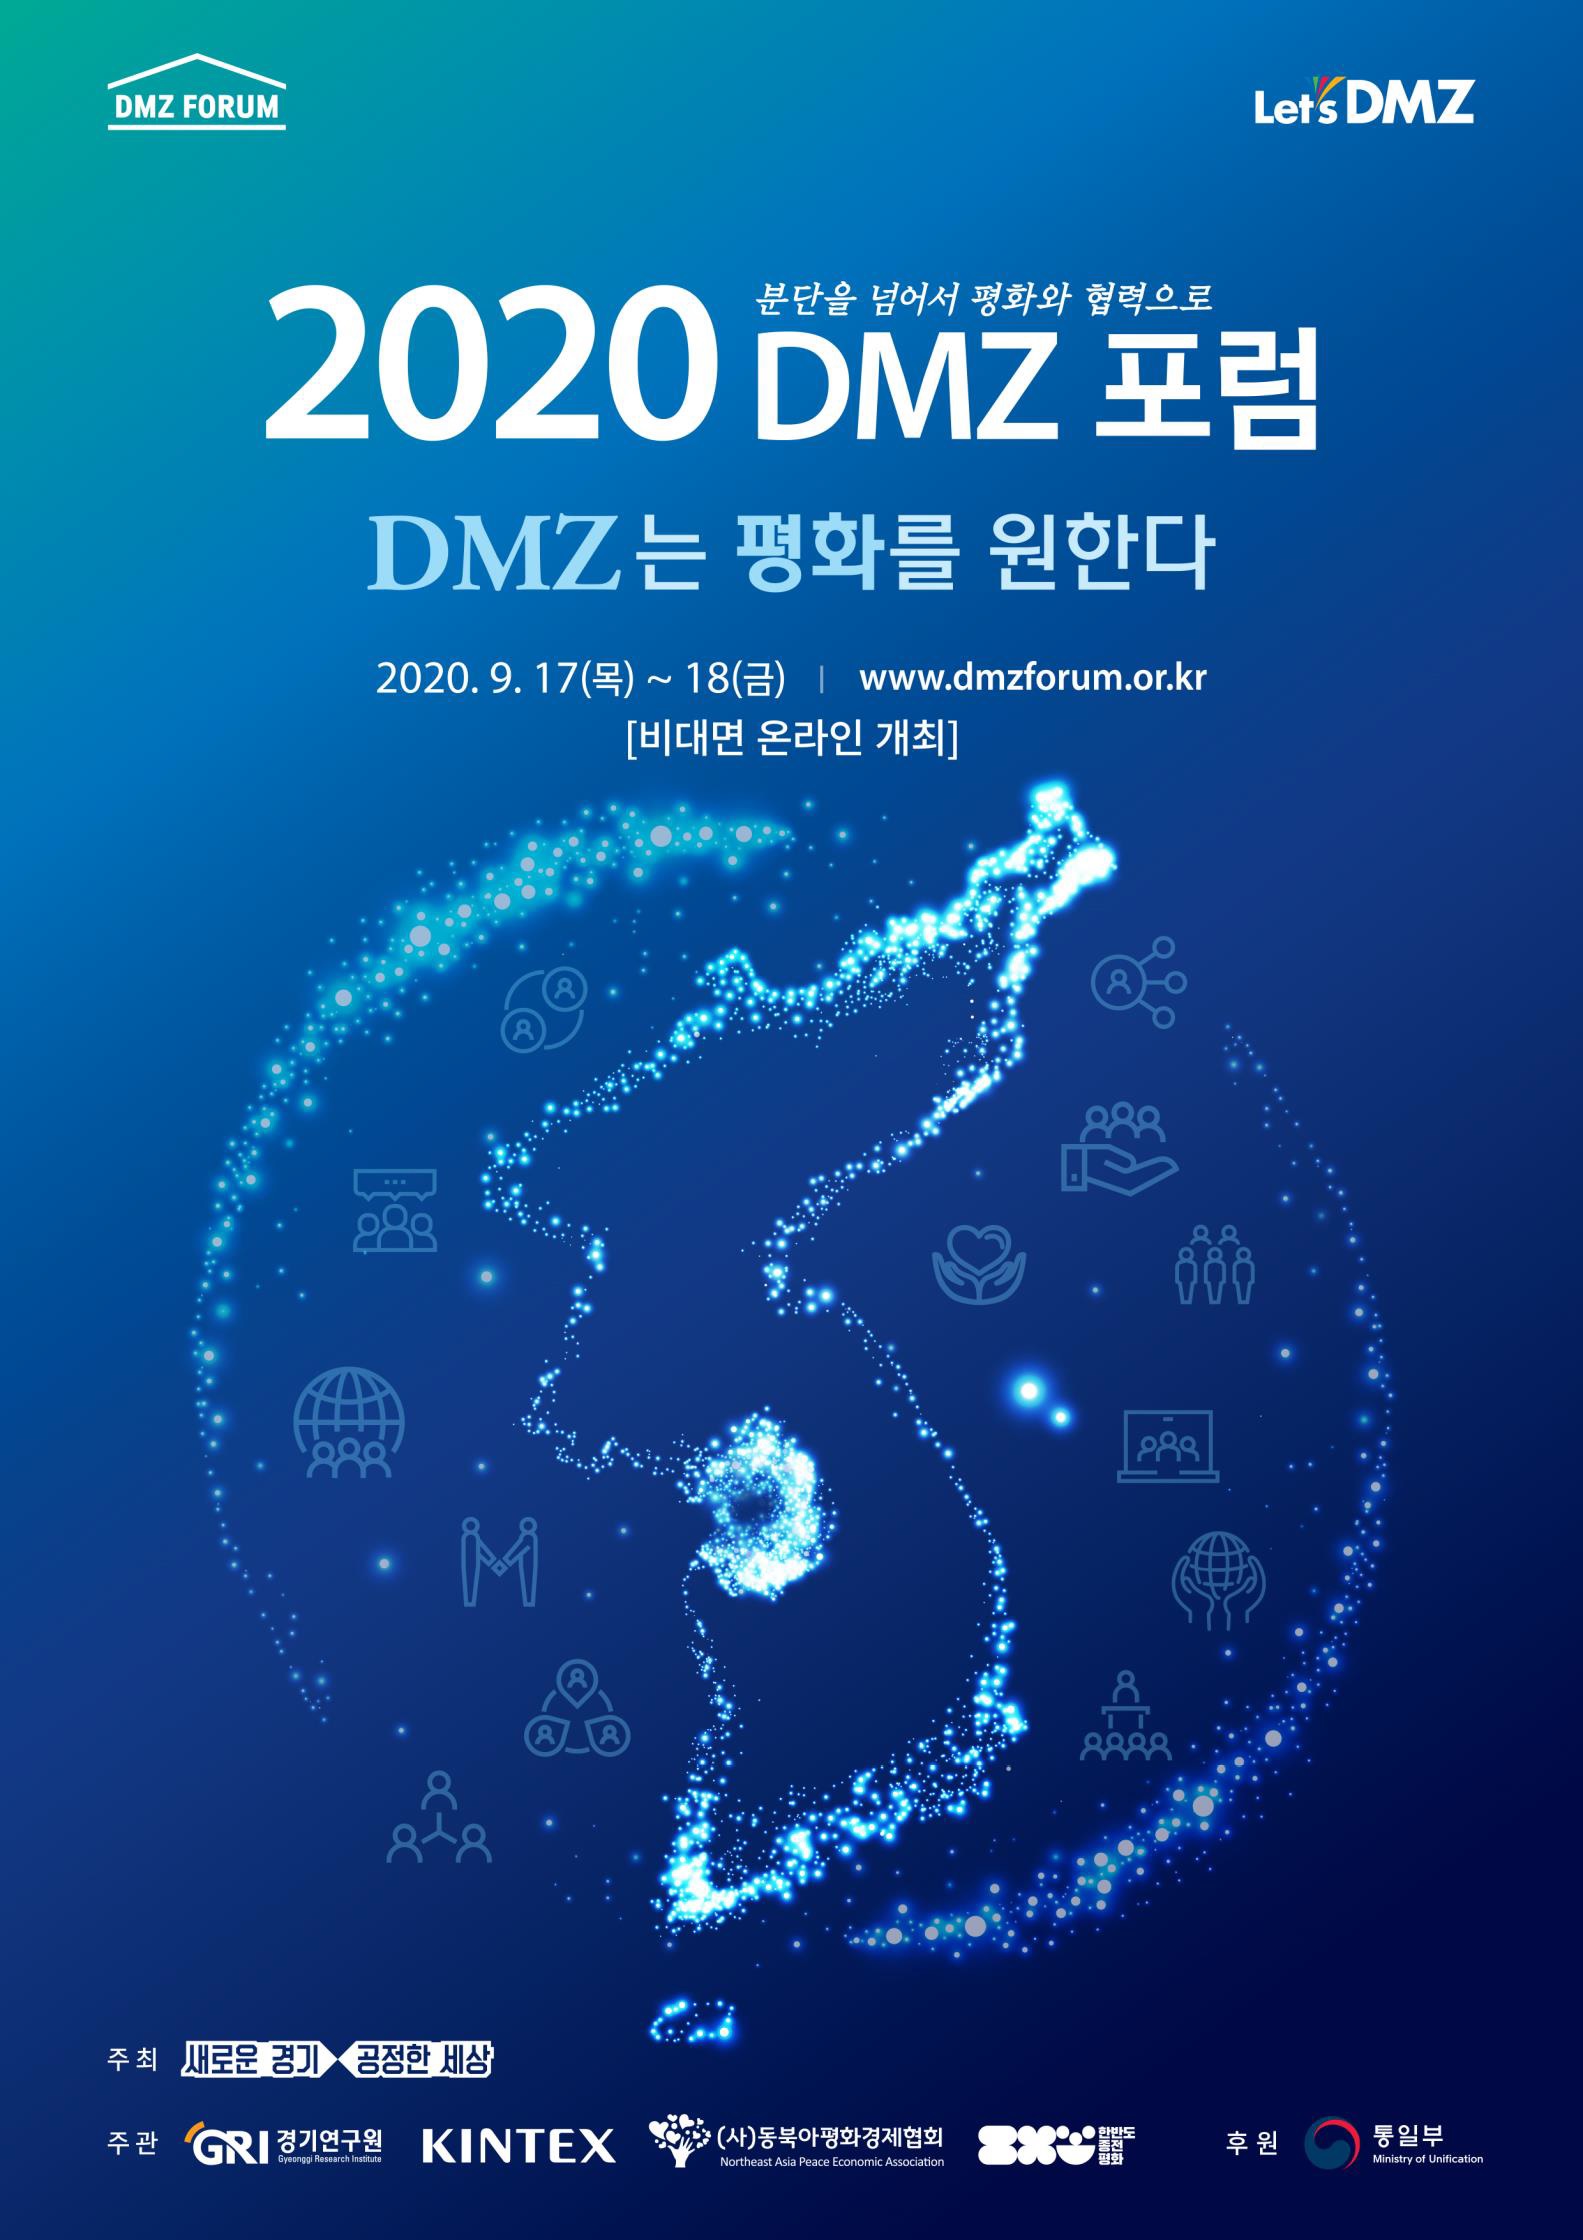 한반도 평화 분위기 확산 위한 ‘DMZ 포럼’, 온라인에서 더 다채롭게 